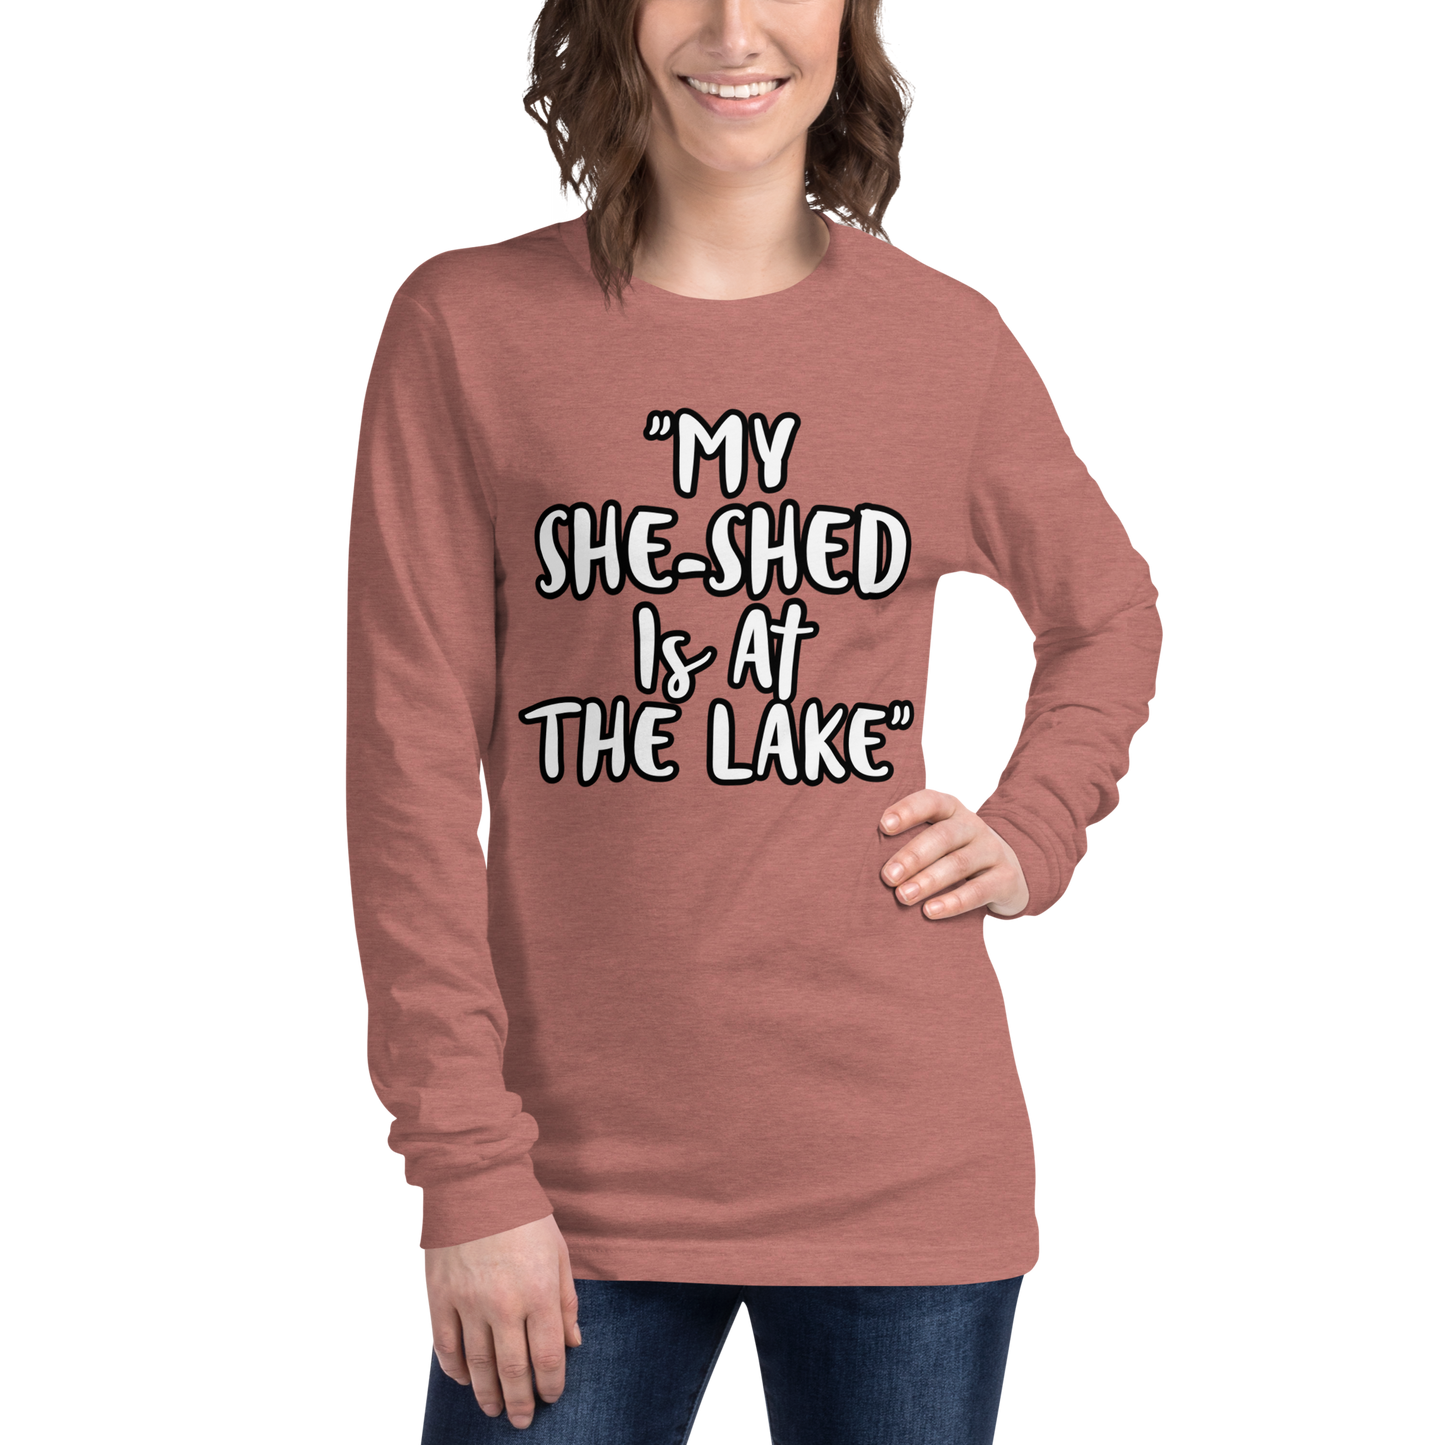 She-Shed Lake Long Sleeve Shirt